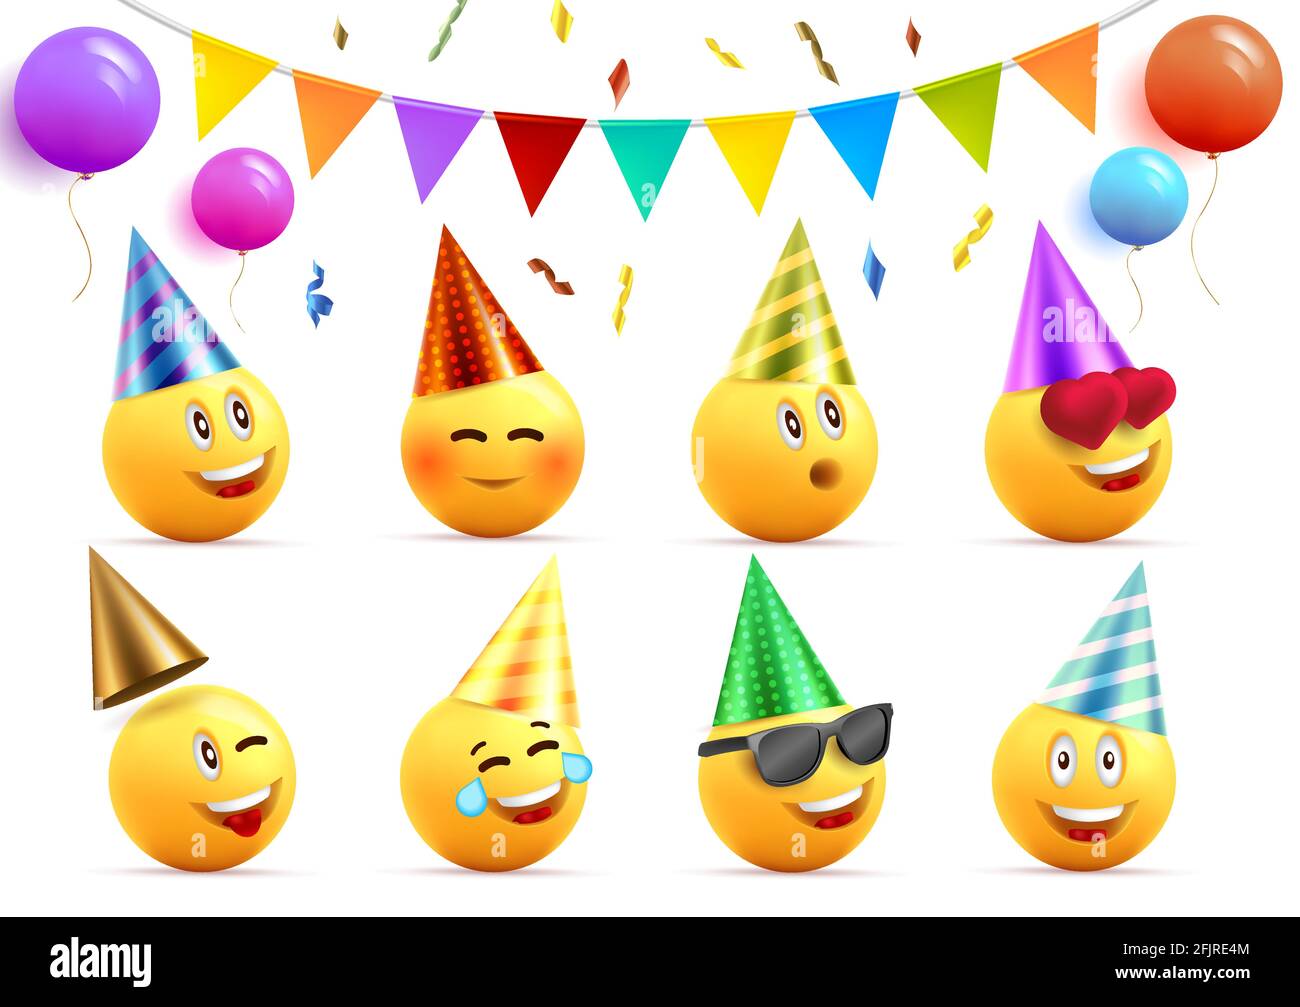 Elementi grafici di compleanno insieme eith giallo sorridente volti in  cappelli cono con espressioni felici e balloni rotondi e feste bandiere con  confetti, isolare Immagine e Vettoriale - Alamy